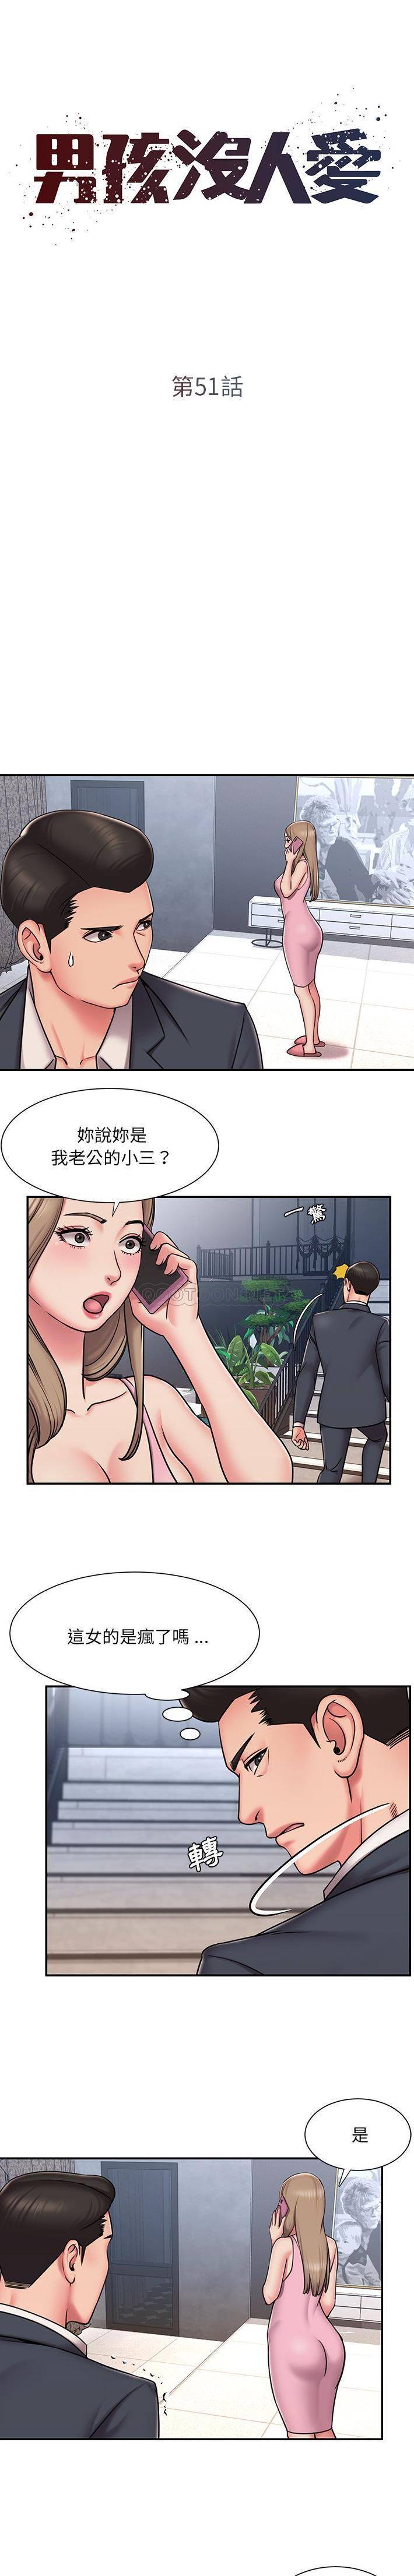 韩国污漫画 被拋棄的男人(男孩沒人愛) 第51话 1